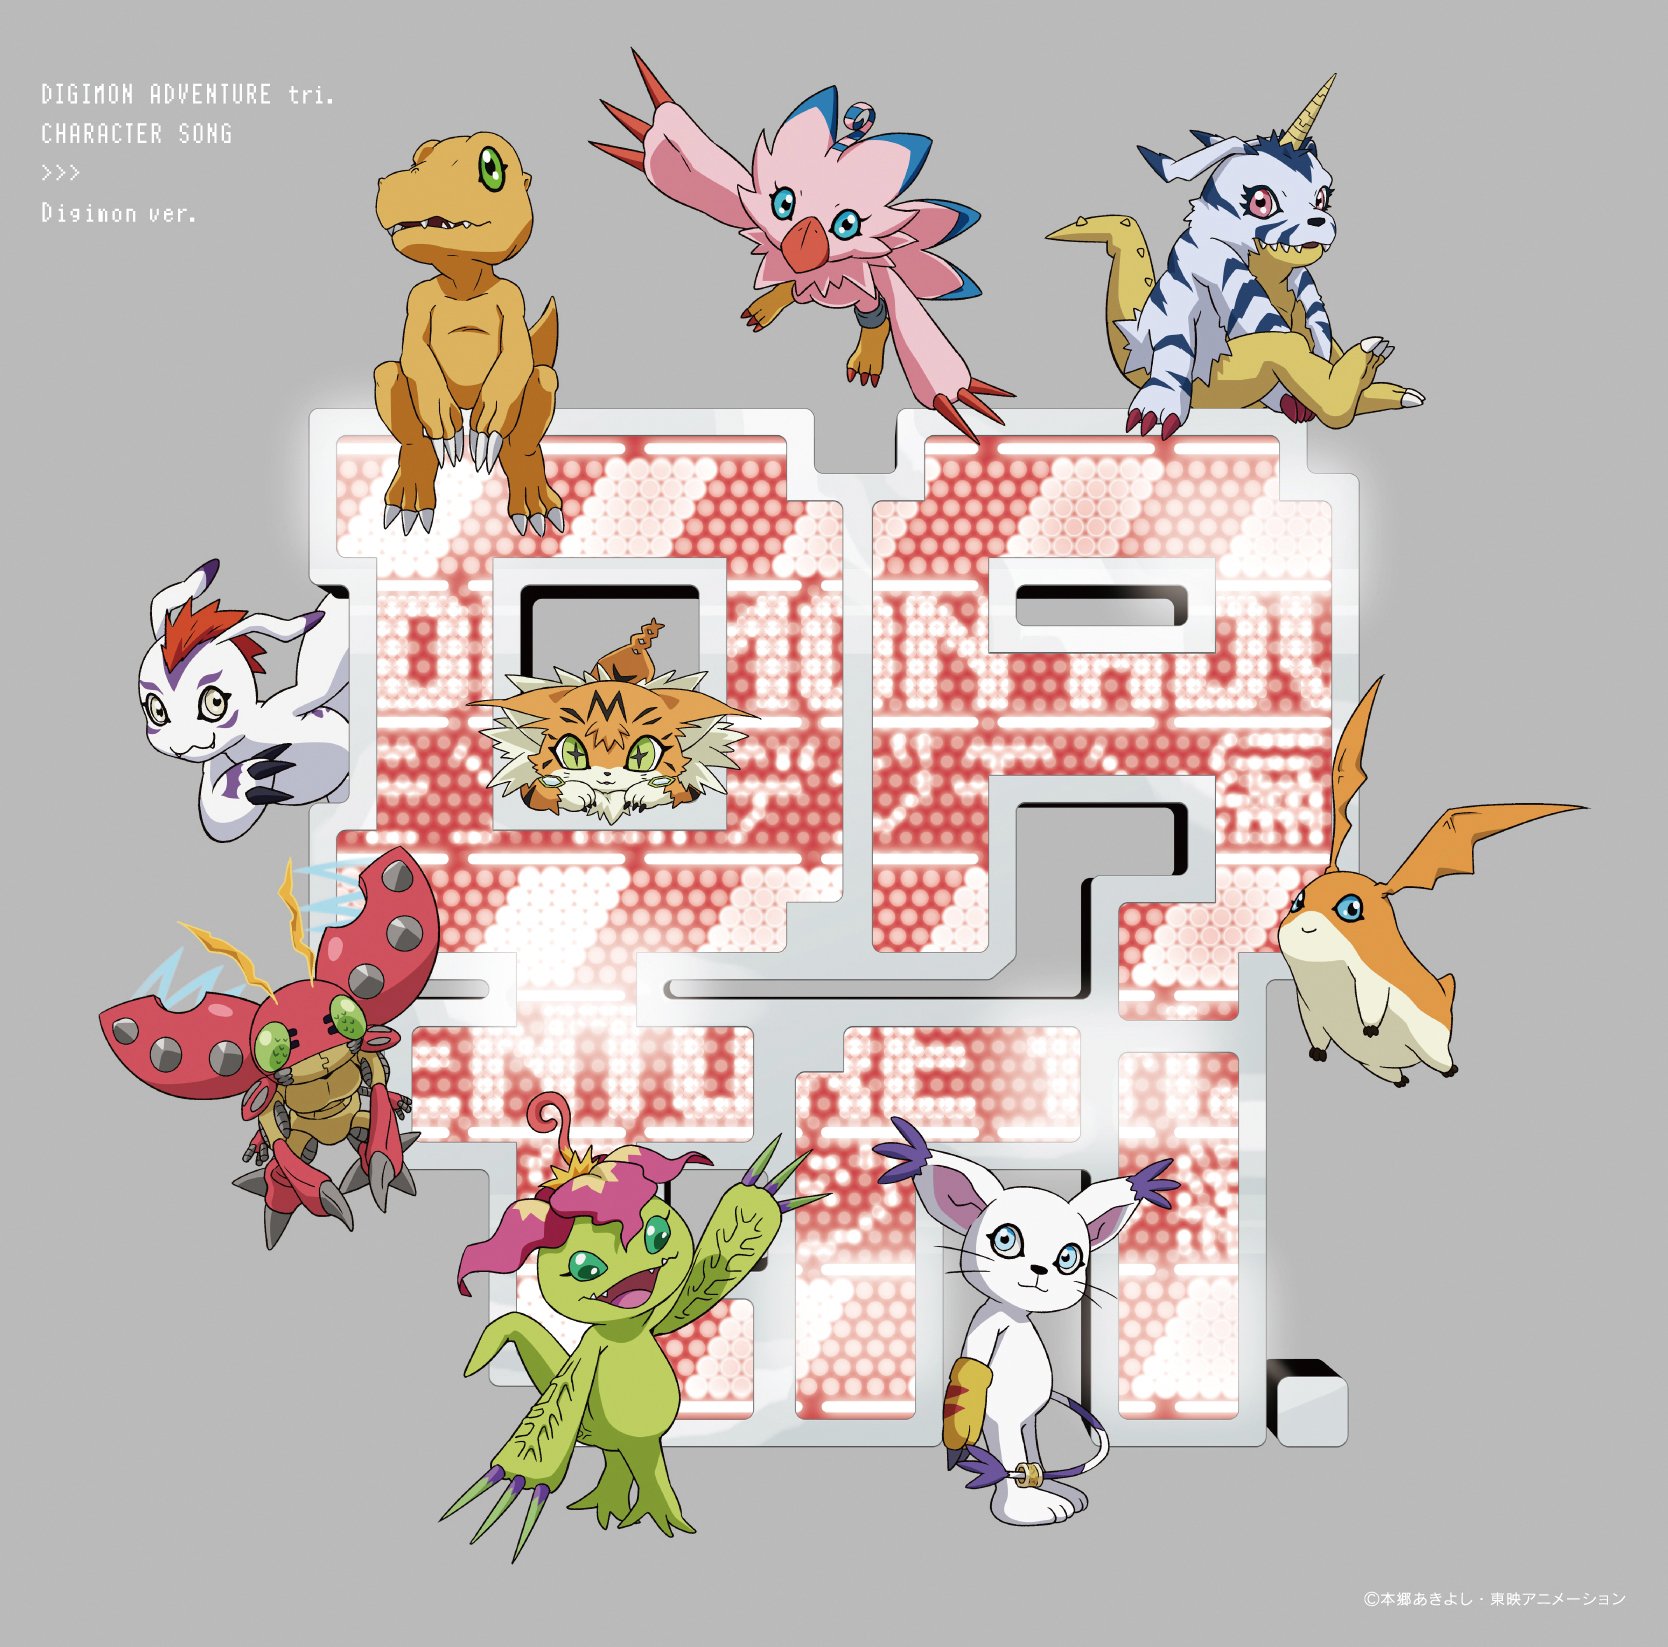 Revelados dubladores e músicas de Digimon Adventure Tri, Mega Hero